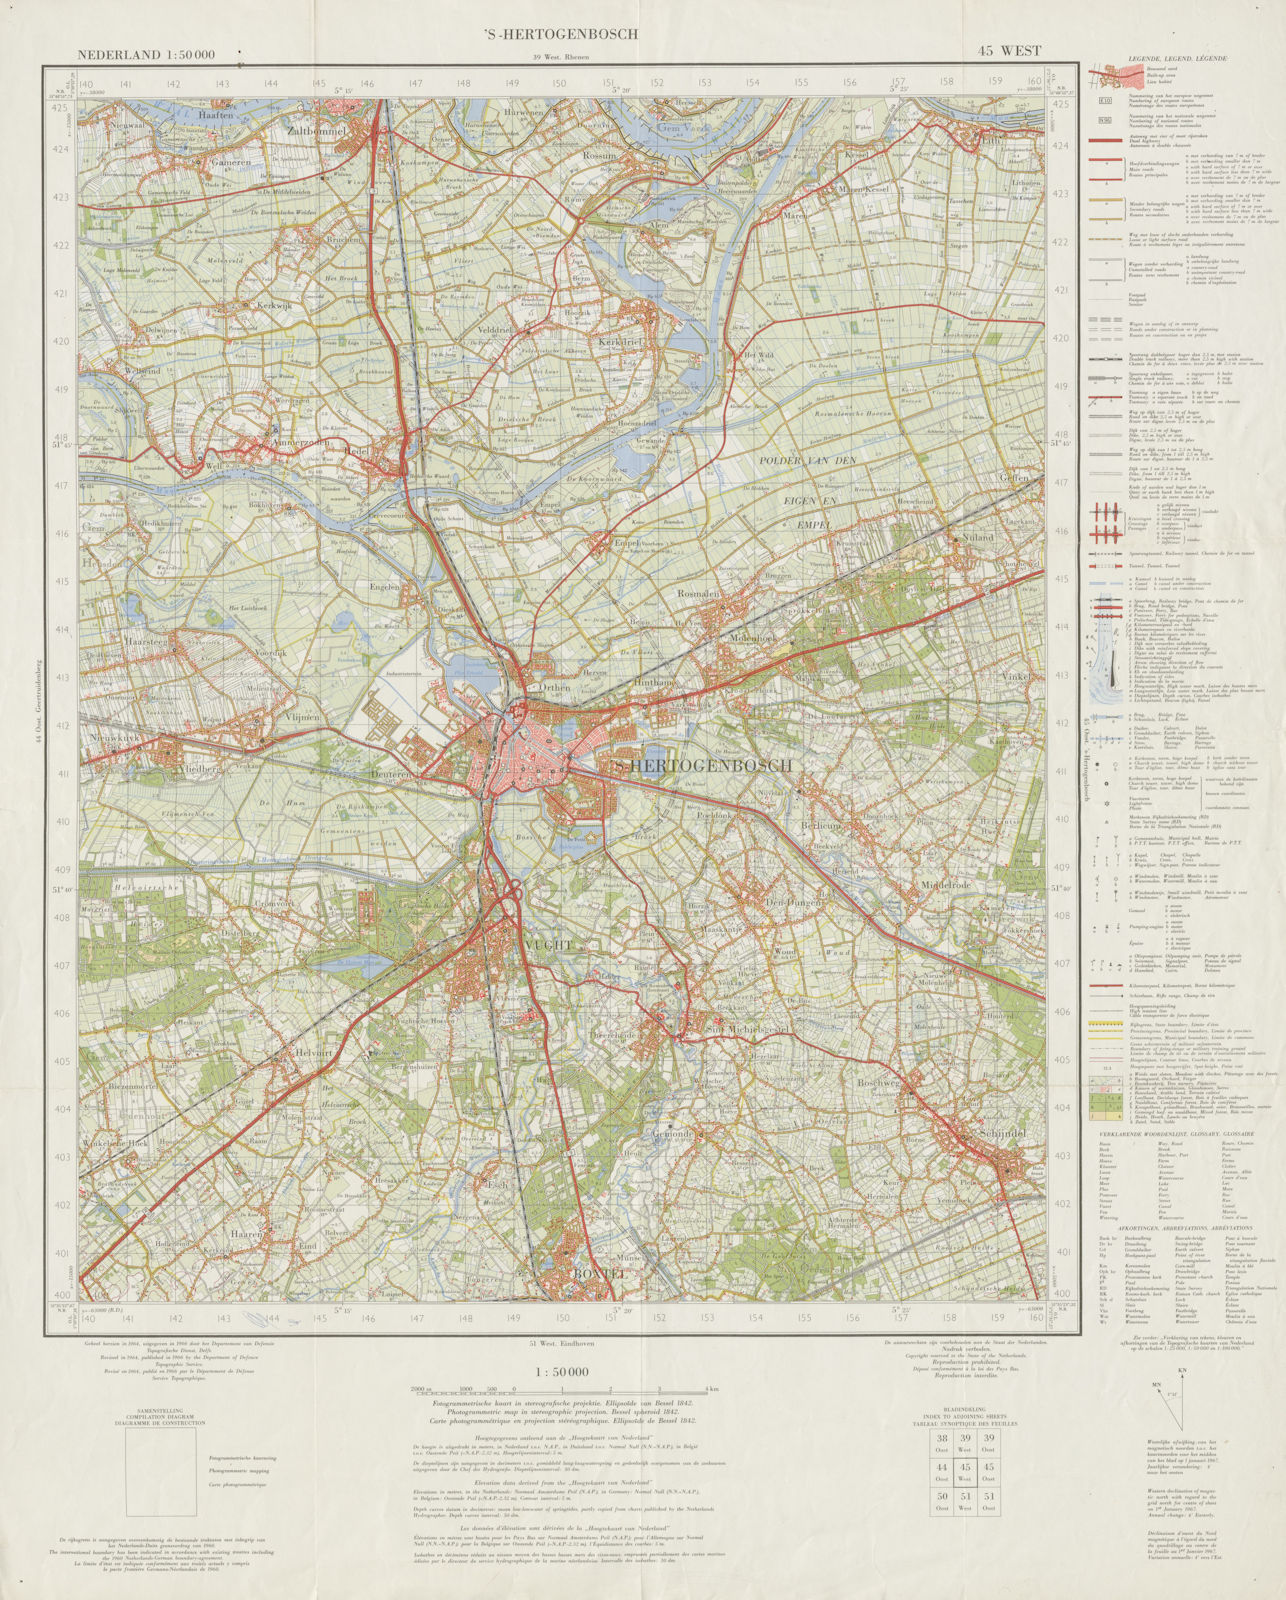 'S-Hertogenbosch environs topo map. Vught Boxtel Zaltbommel. Sheet 45 West 1966